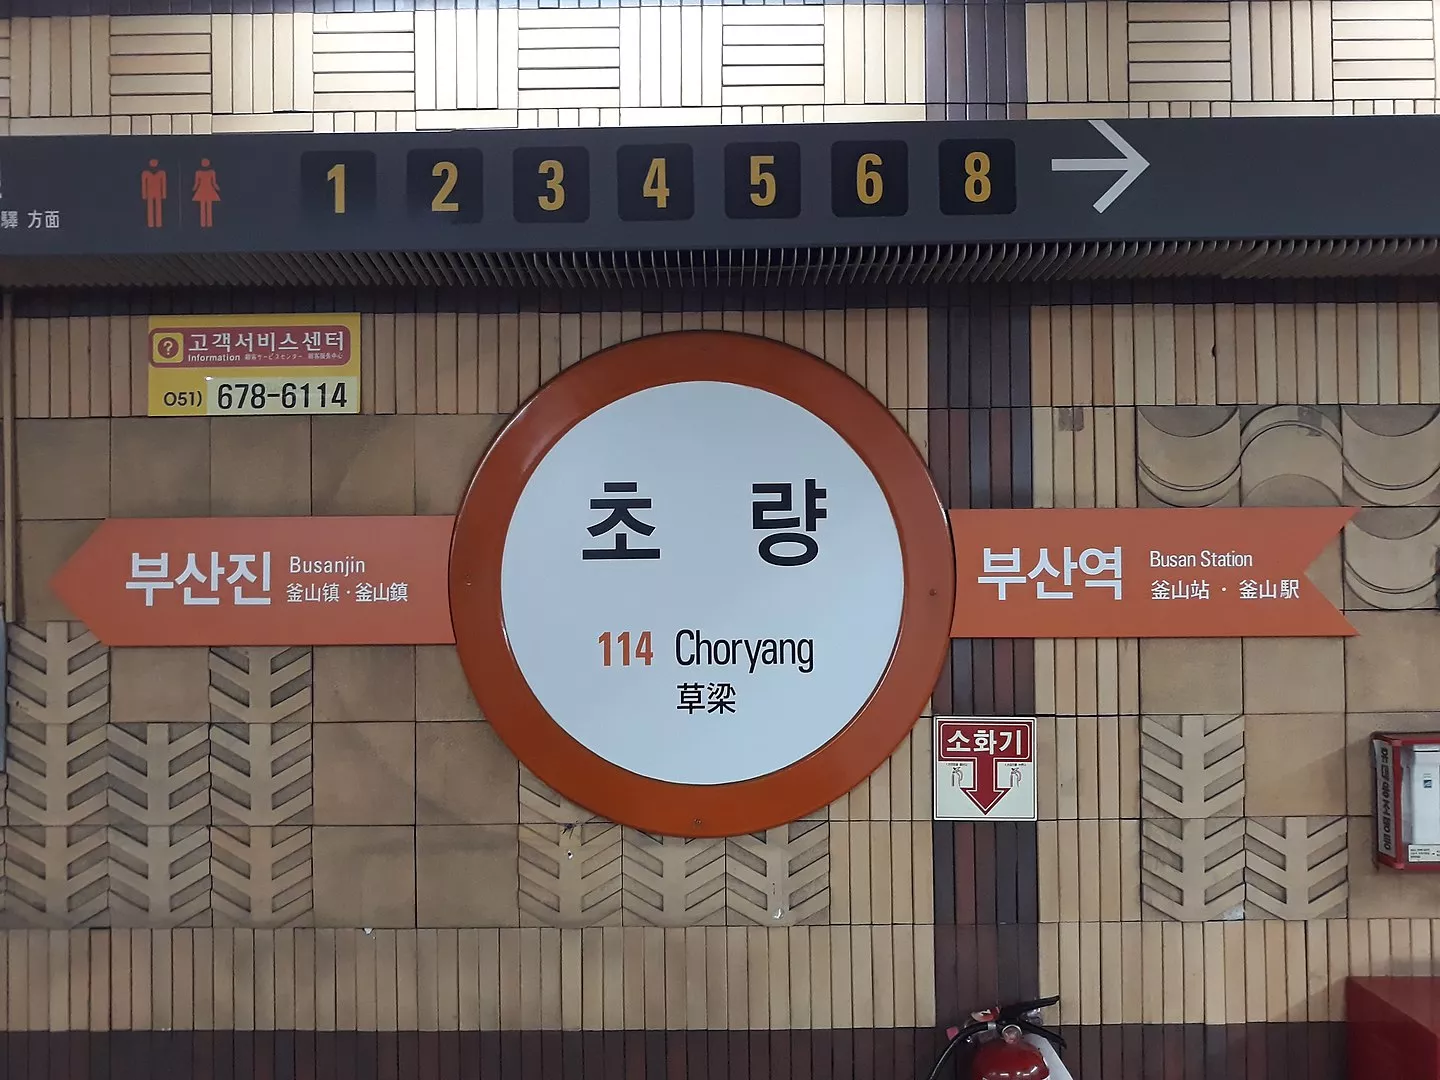 Choryang Station - 초량역 - Busan